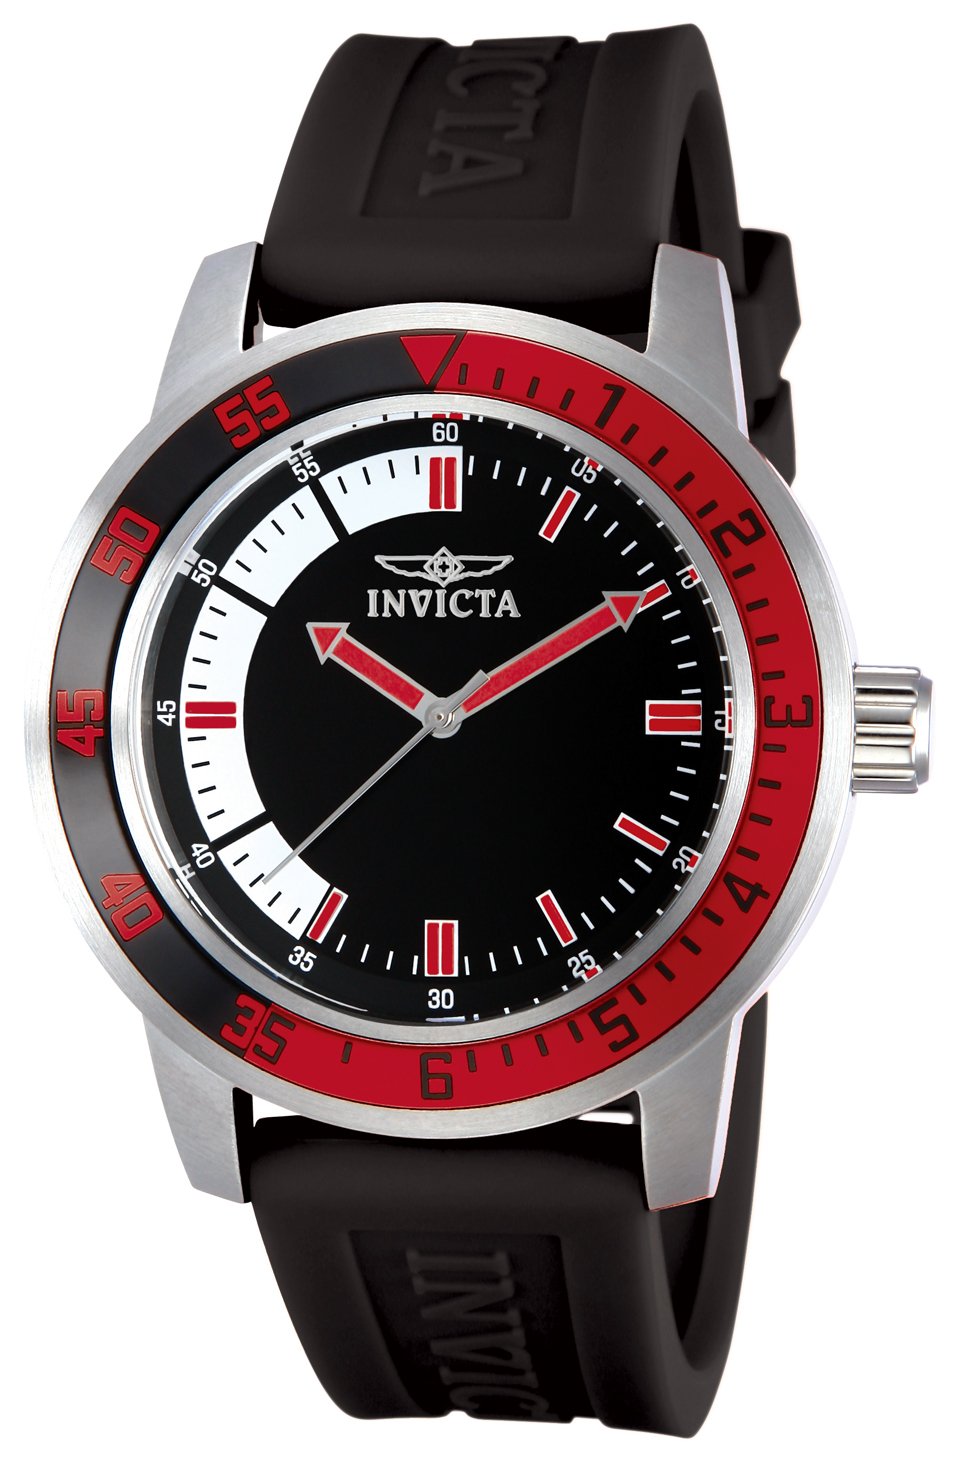 Invicta Men's Specialty Watch